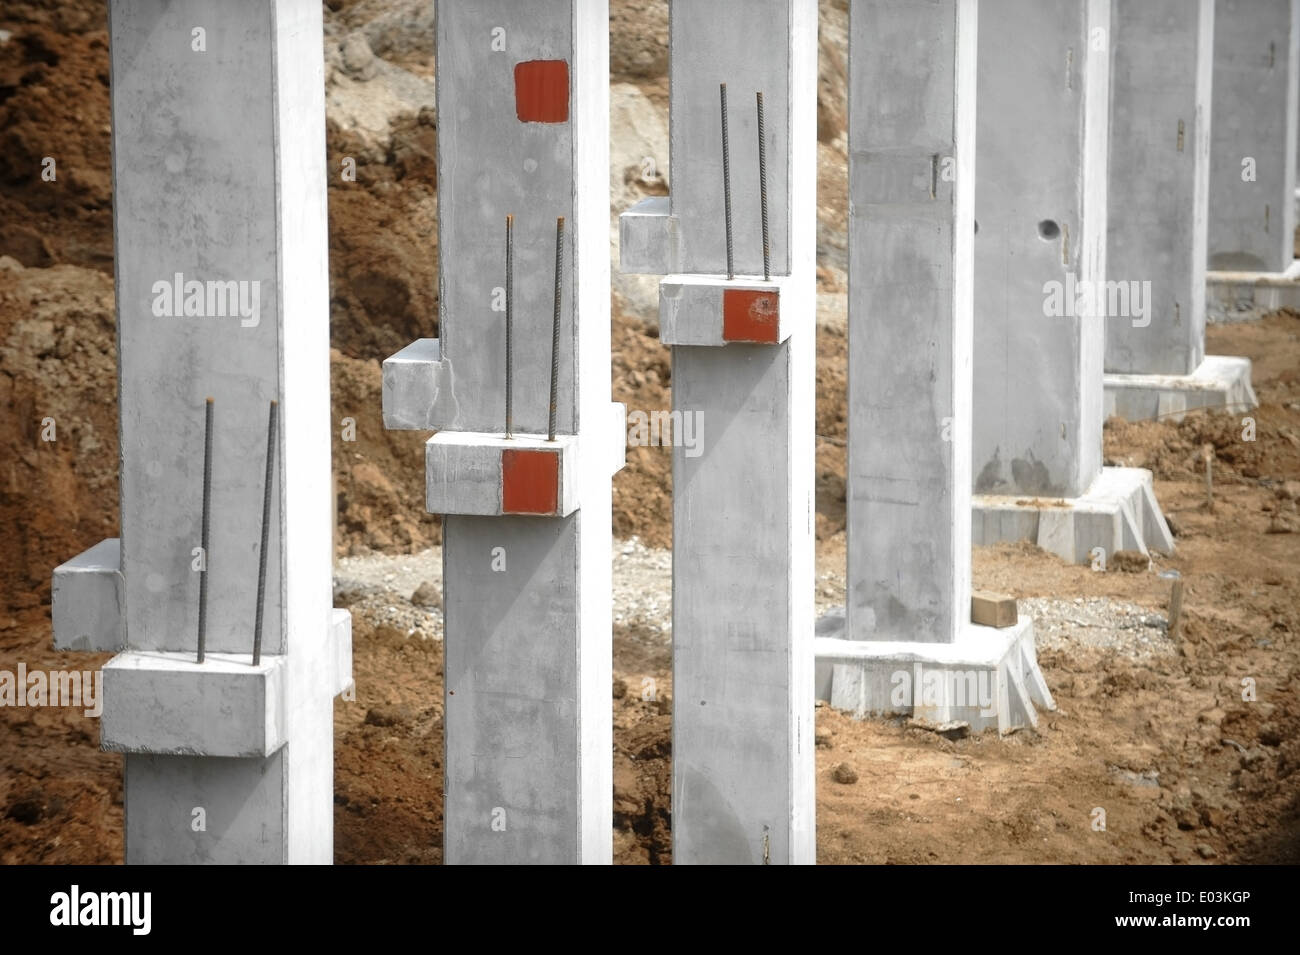 Détails sur le site de construction avec plusieurs piliers en béton Banque D'Images